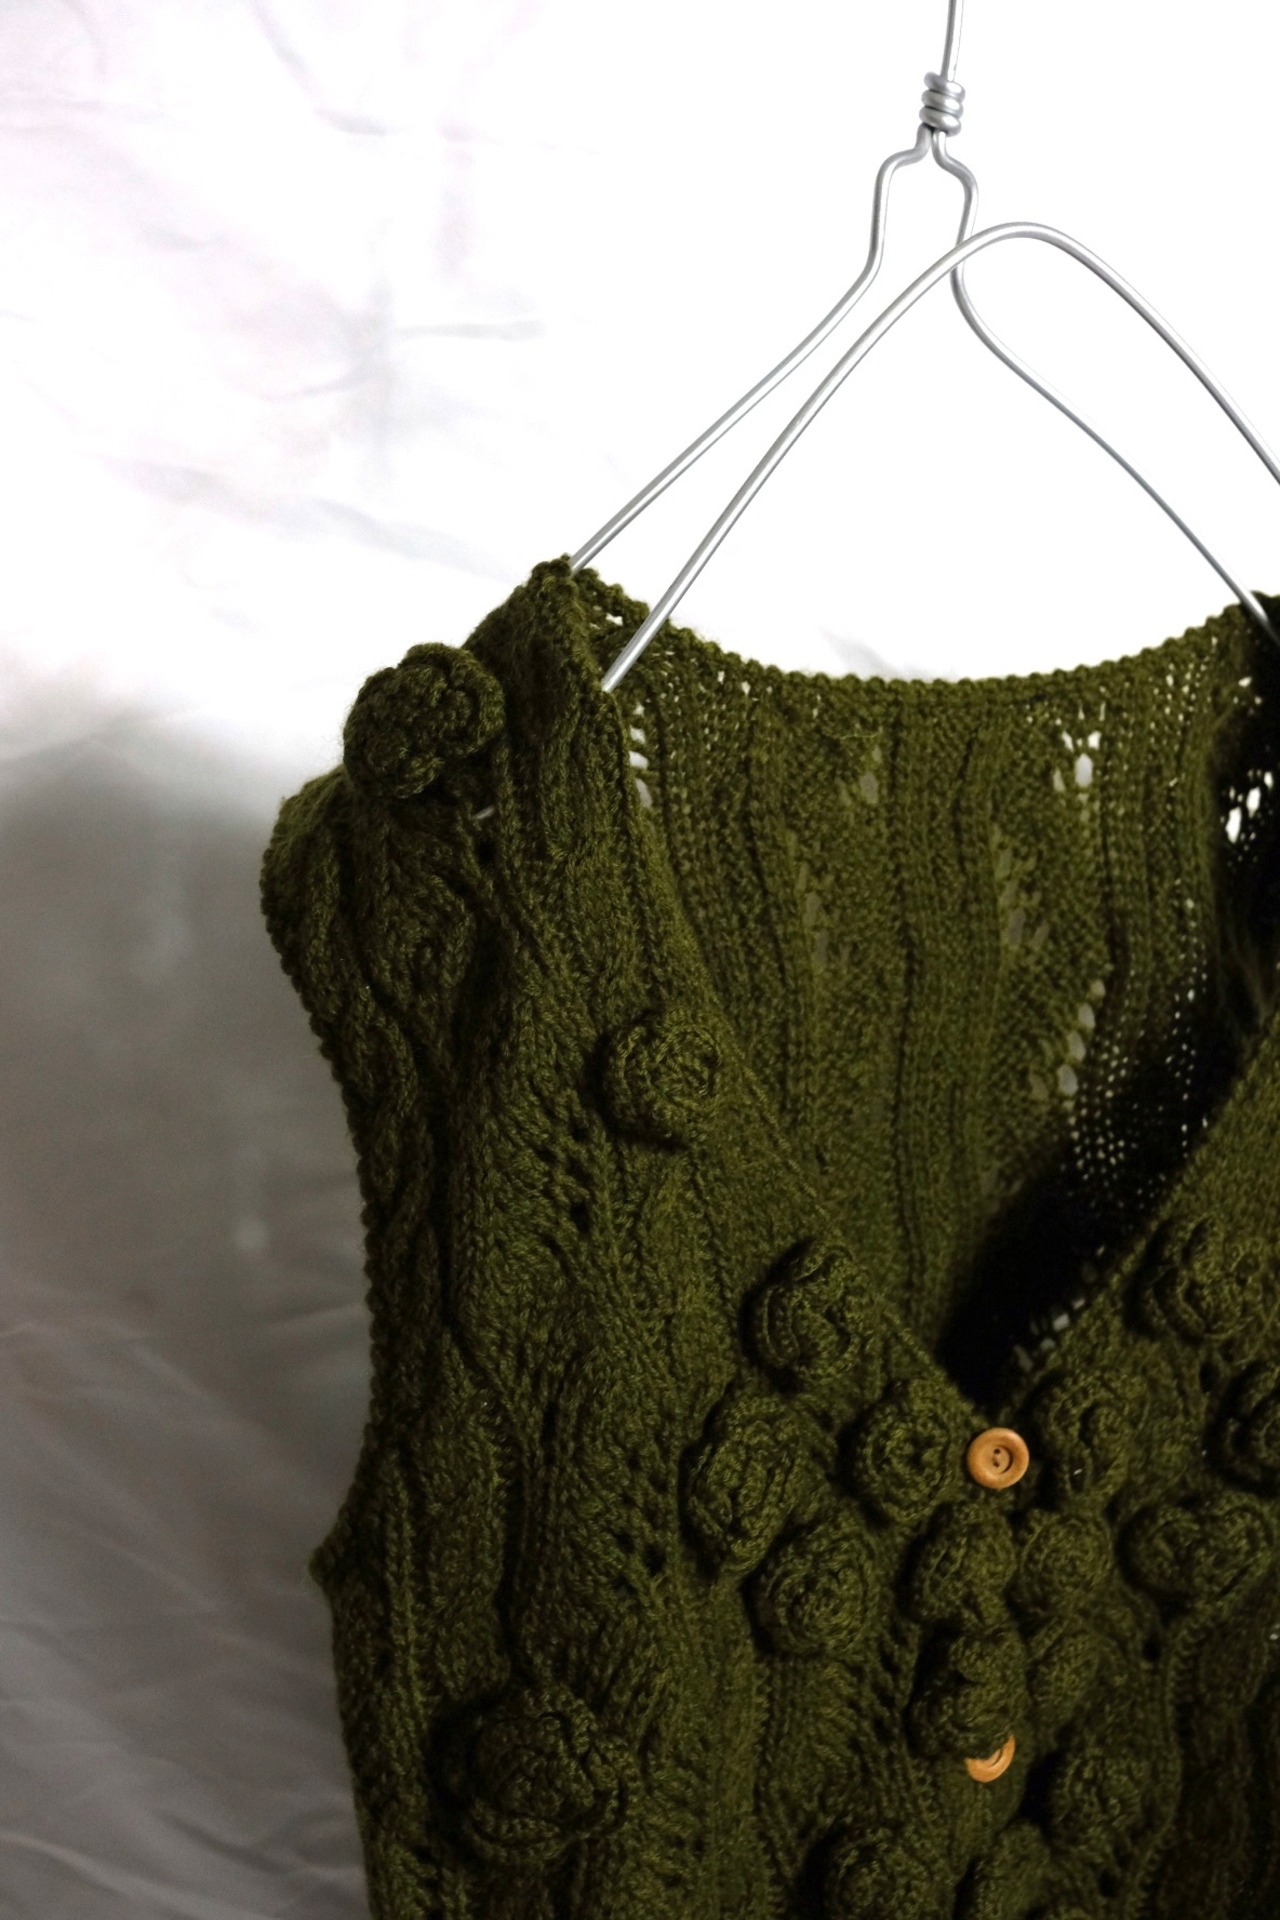 Design knit vest